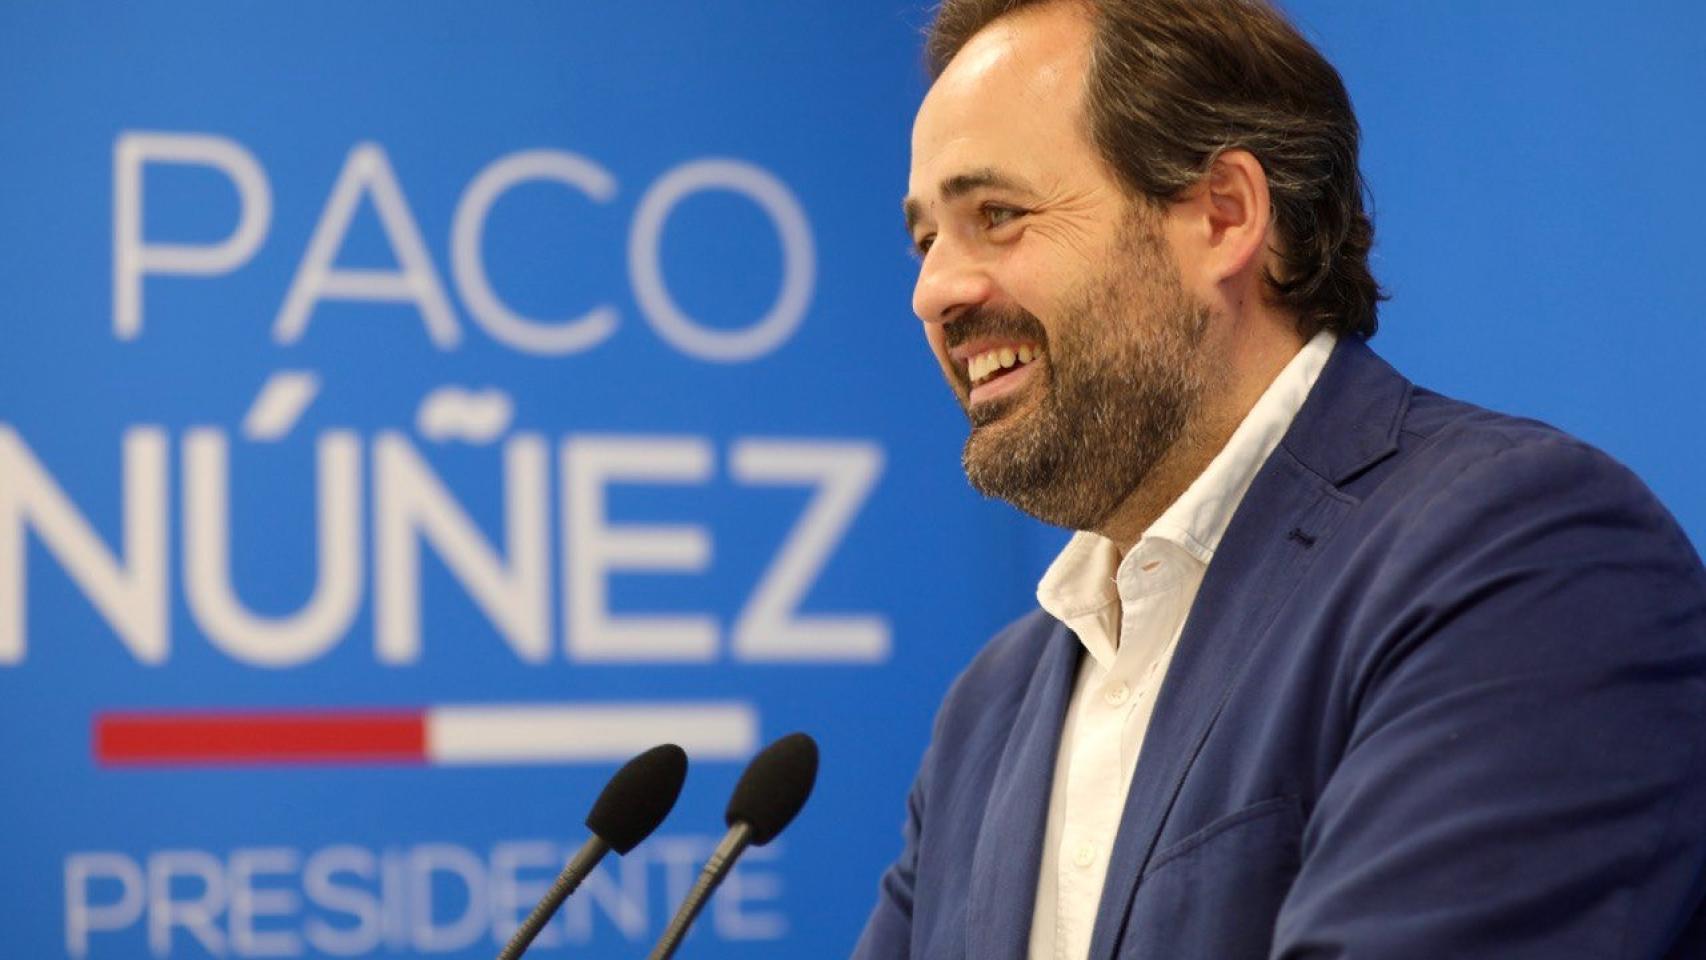 Paco Núñez este lunes en rueda de prensa.